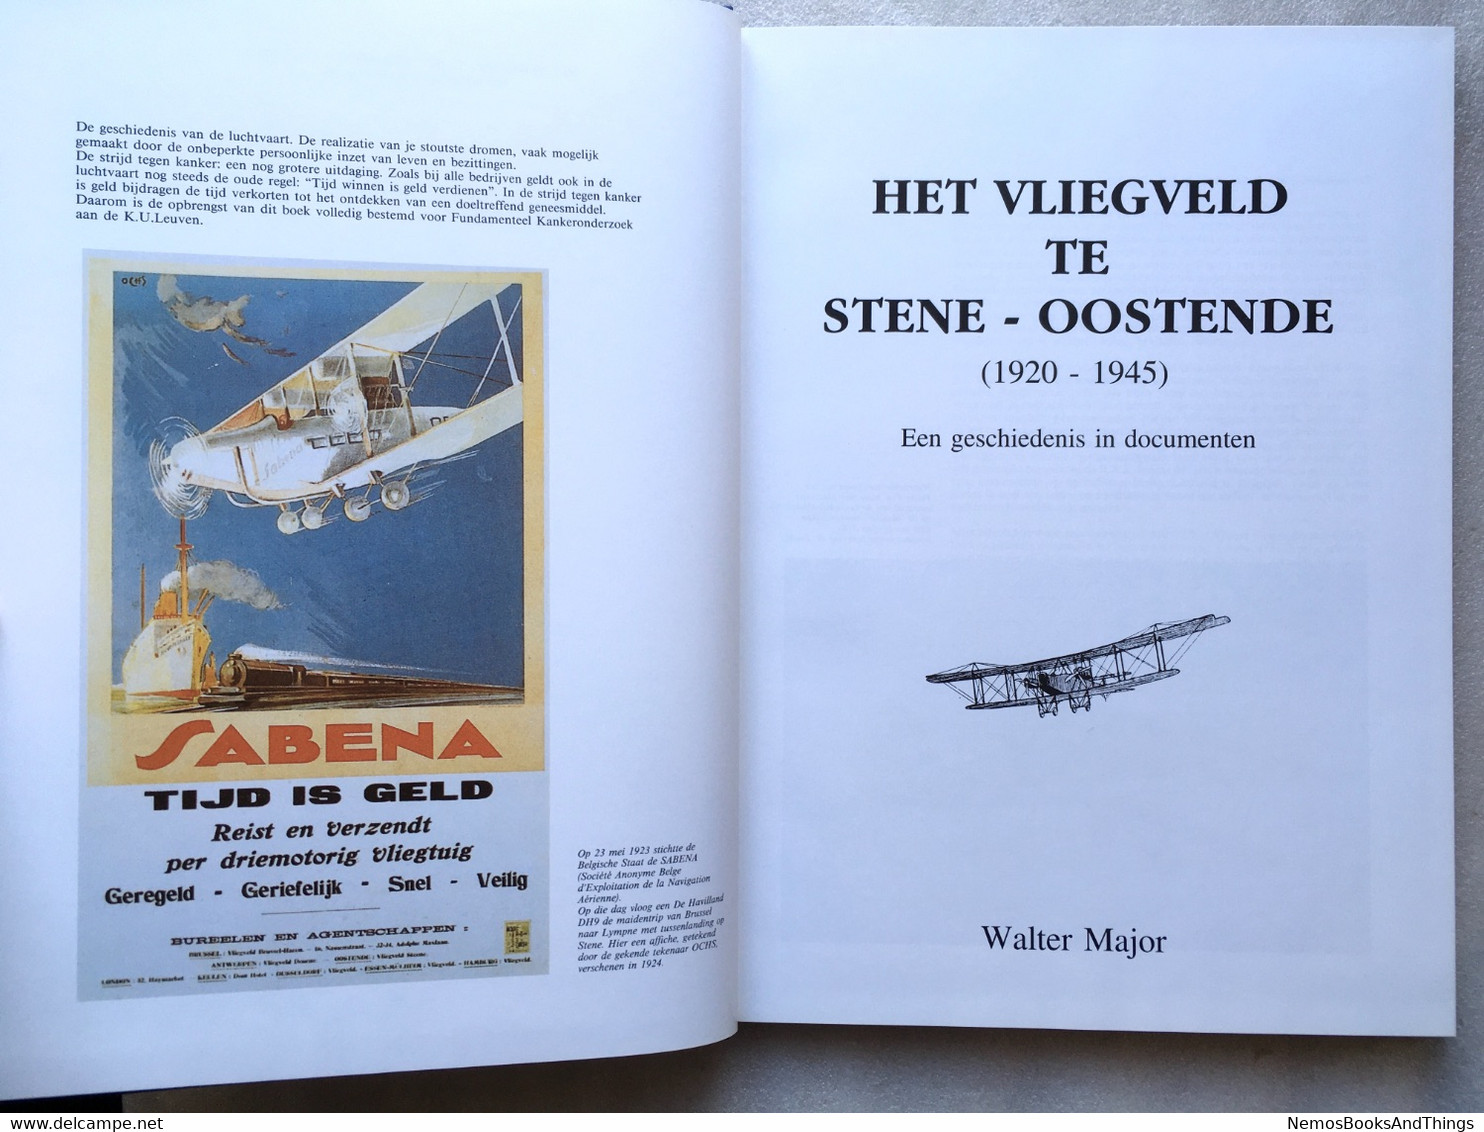 Het Vliegveld Te Stene - Oostende (1920-1945) Geschiedenis In Documenten - 1500 Ex. - 1993 - W Major  - Luchtvaart - History